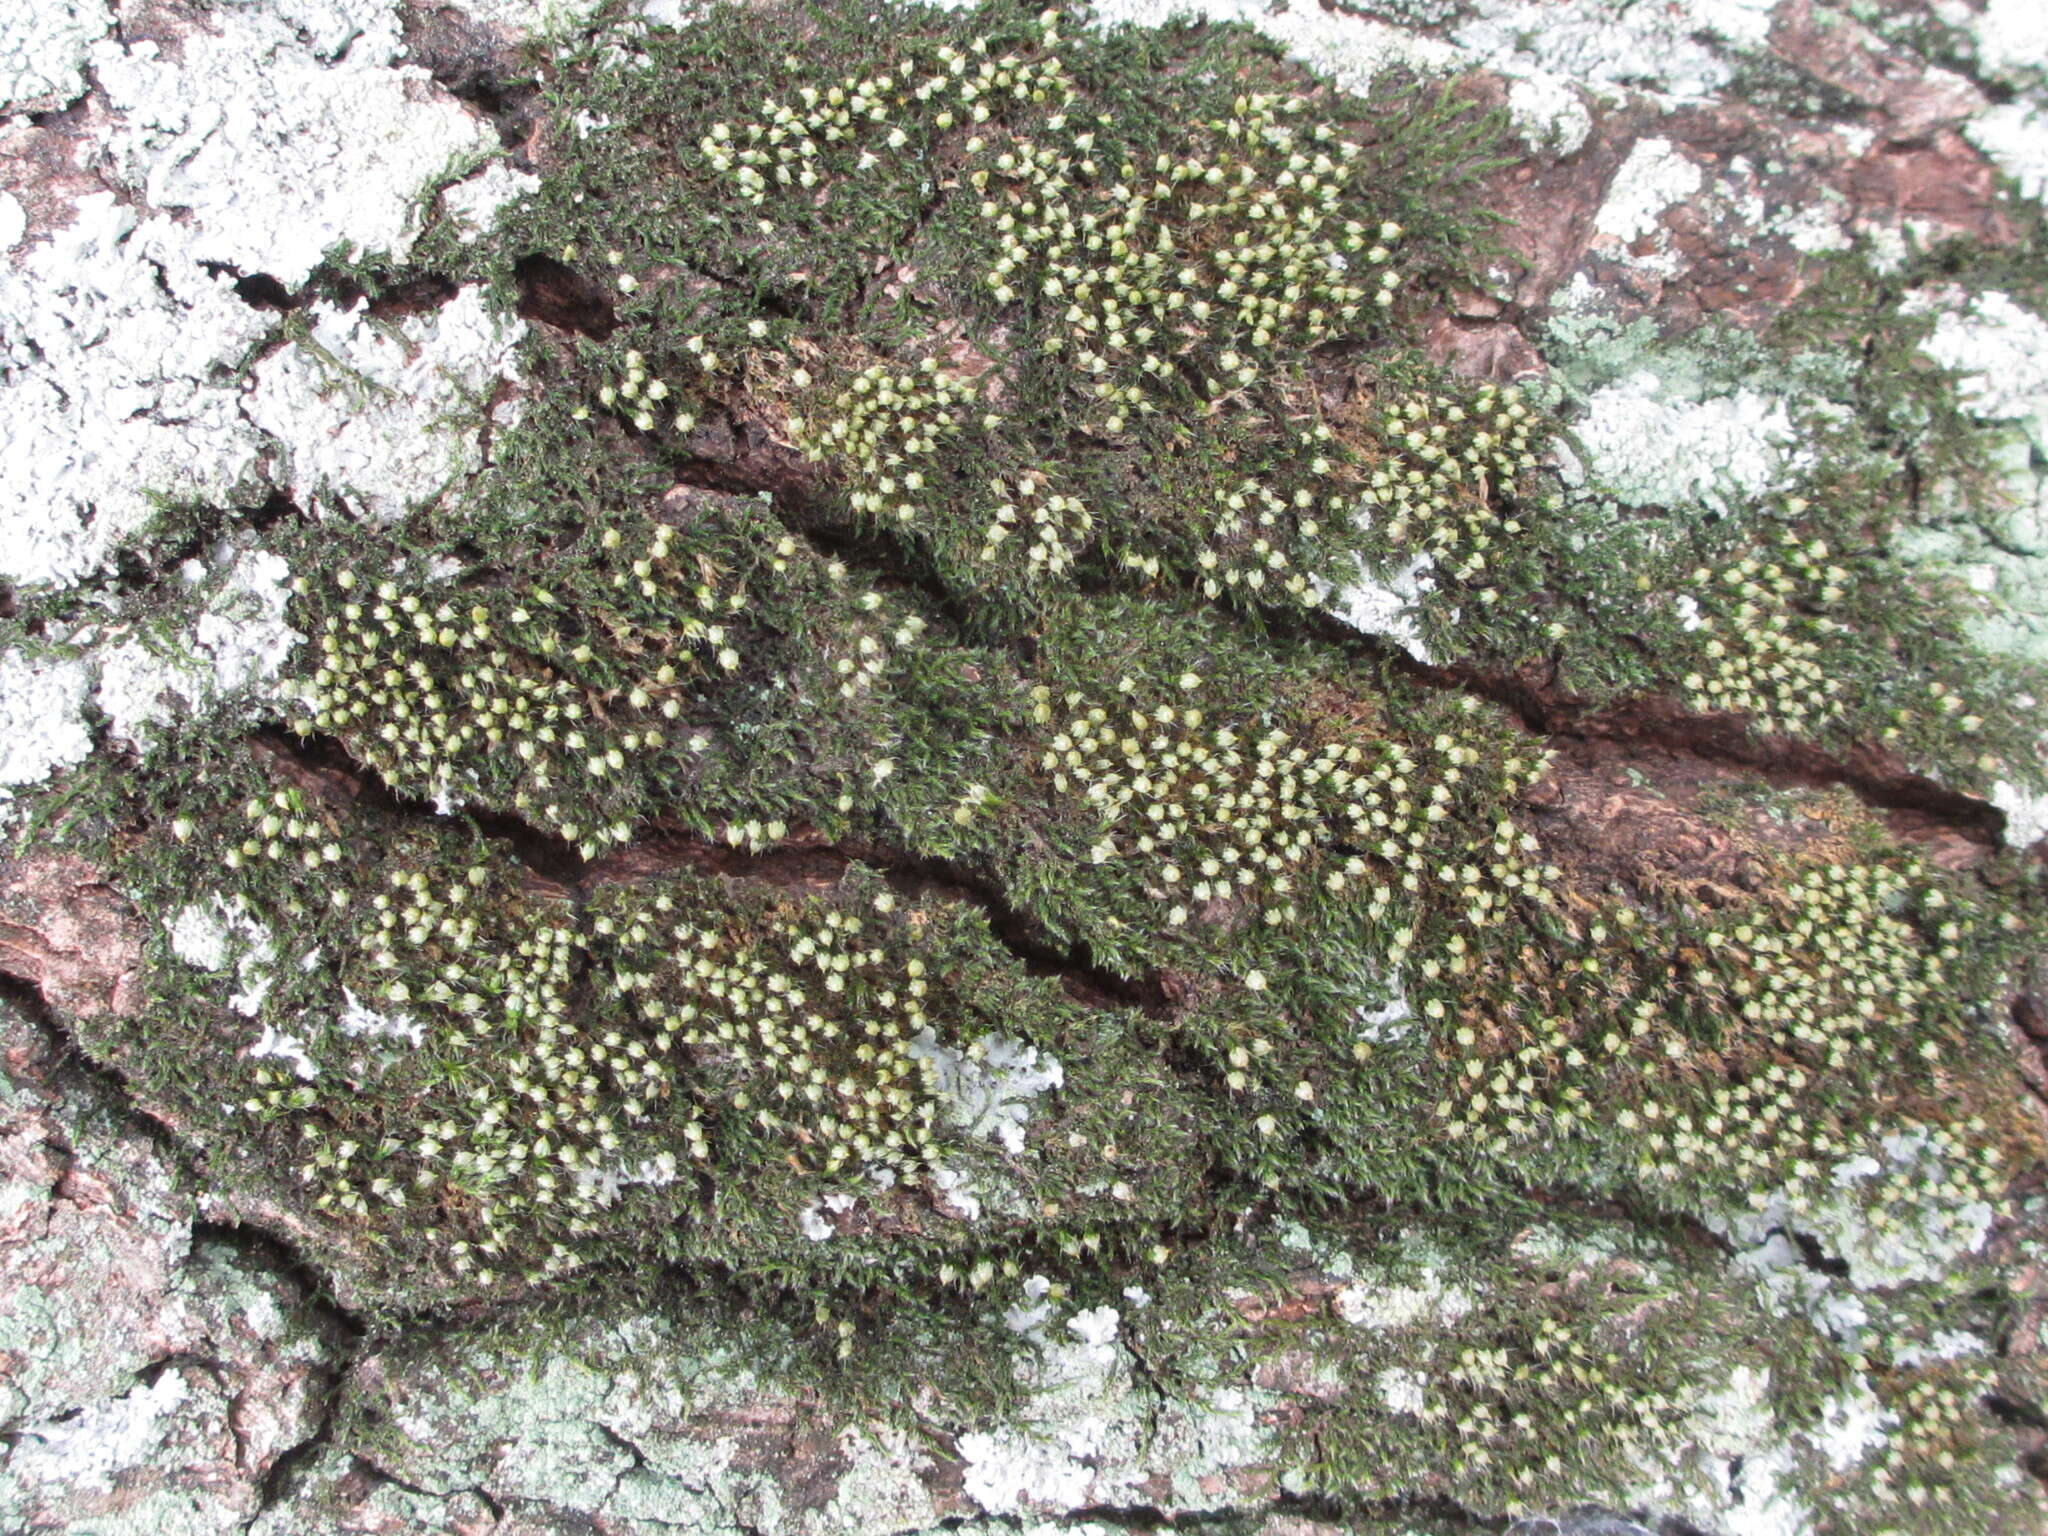 Image of China venturiella moss